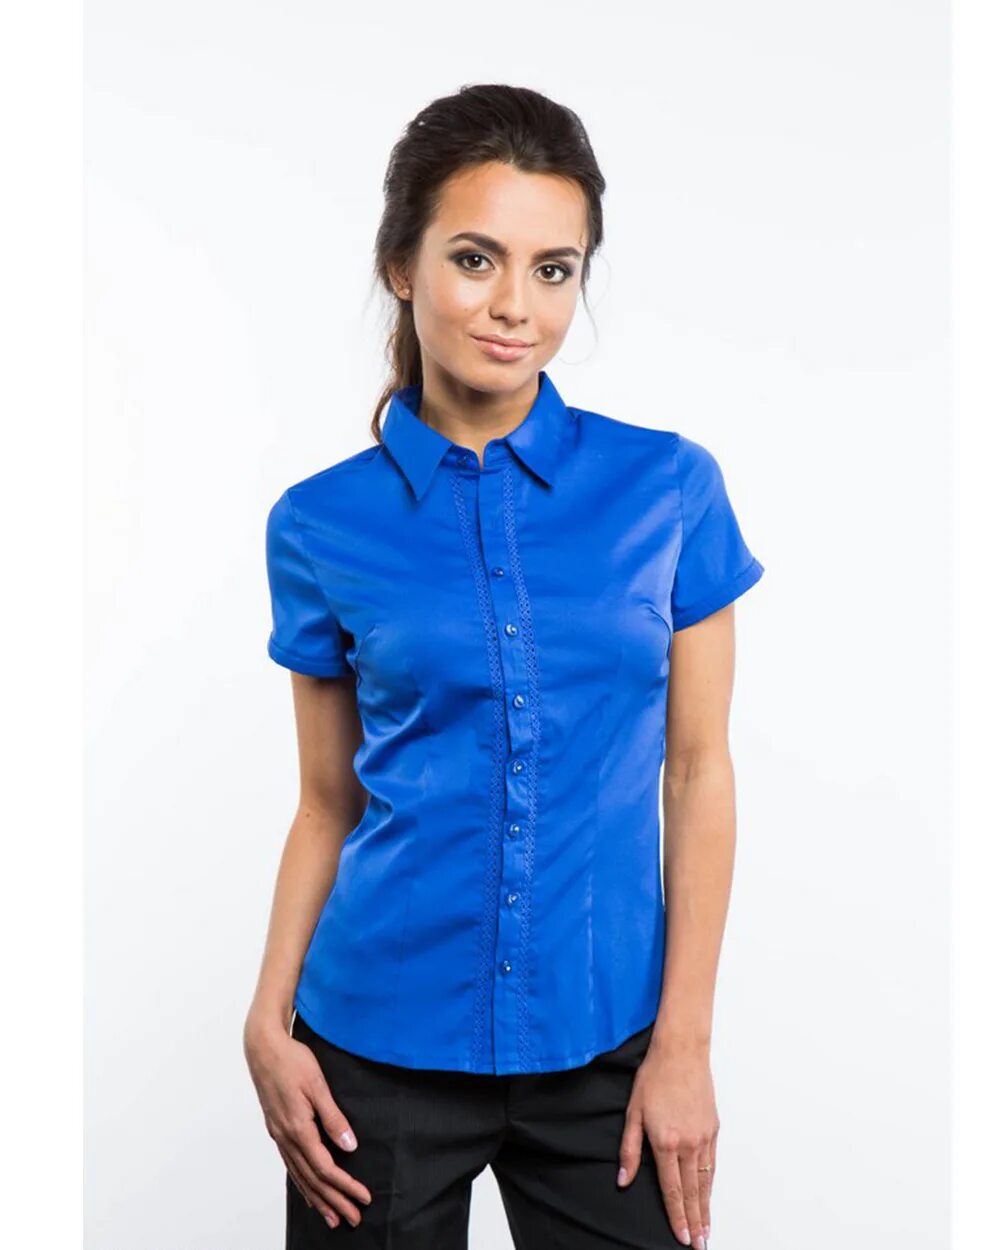 Блузка женская синяя. Синяя рубашка женская. Блузка с коротким рукавом. Блузка женская с коротким рукавом. Рубашка с коротким рукавом женская.